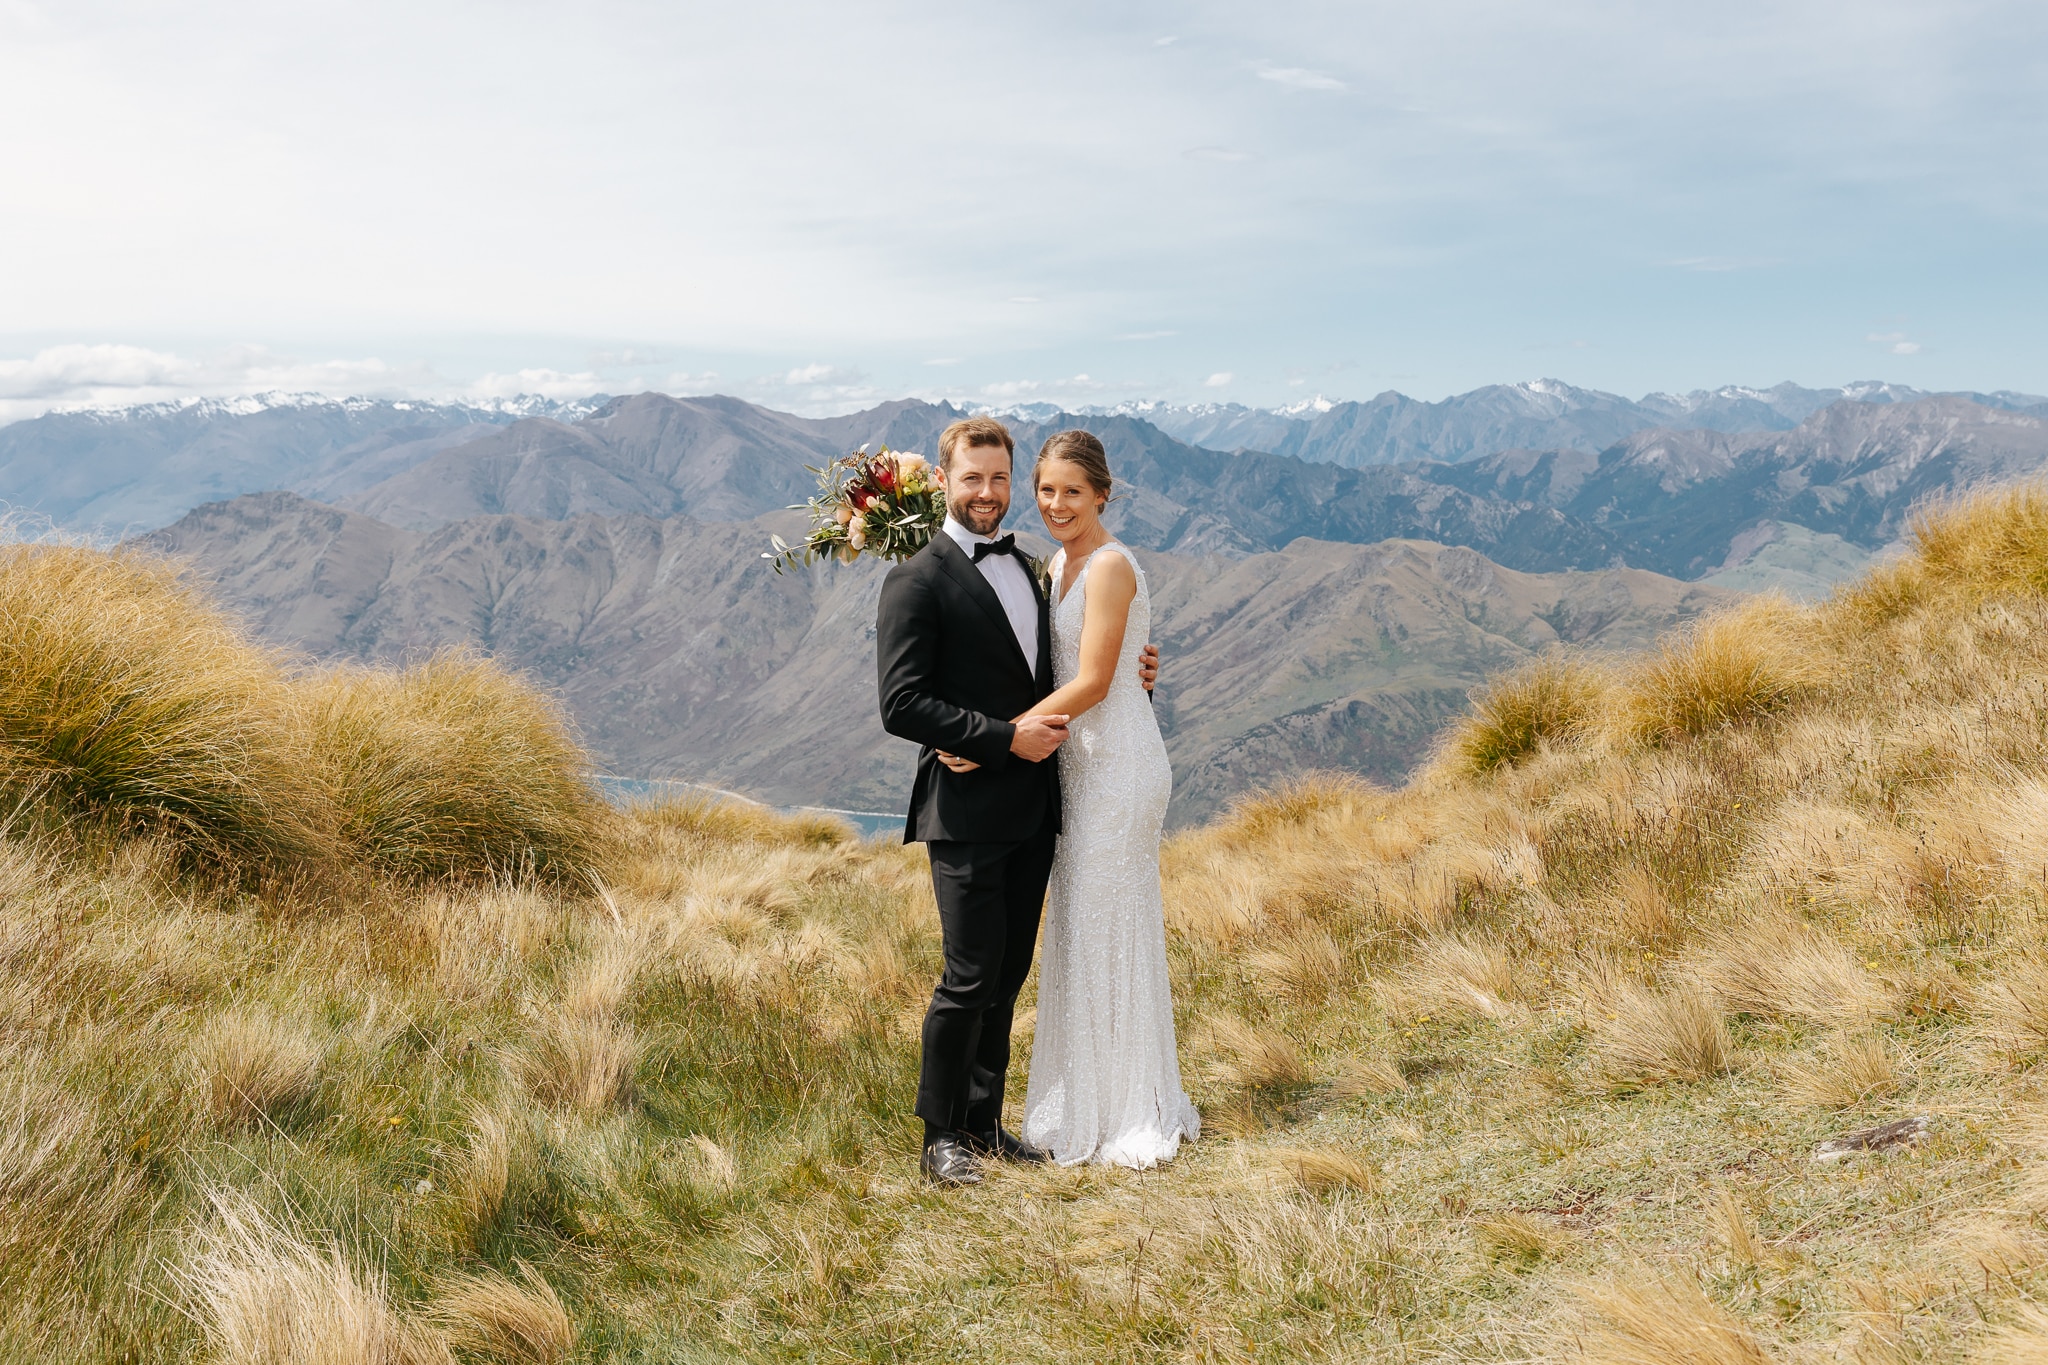 Luxury Elopement wedding in Queenstown New Zealand with helicopter wedding on Coromandel Peak